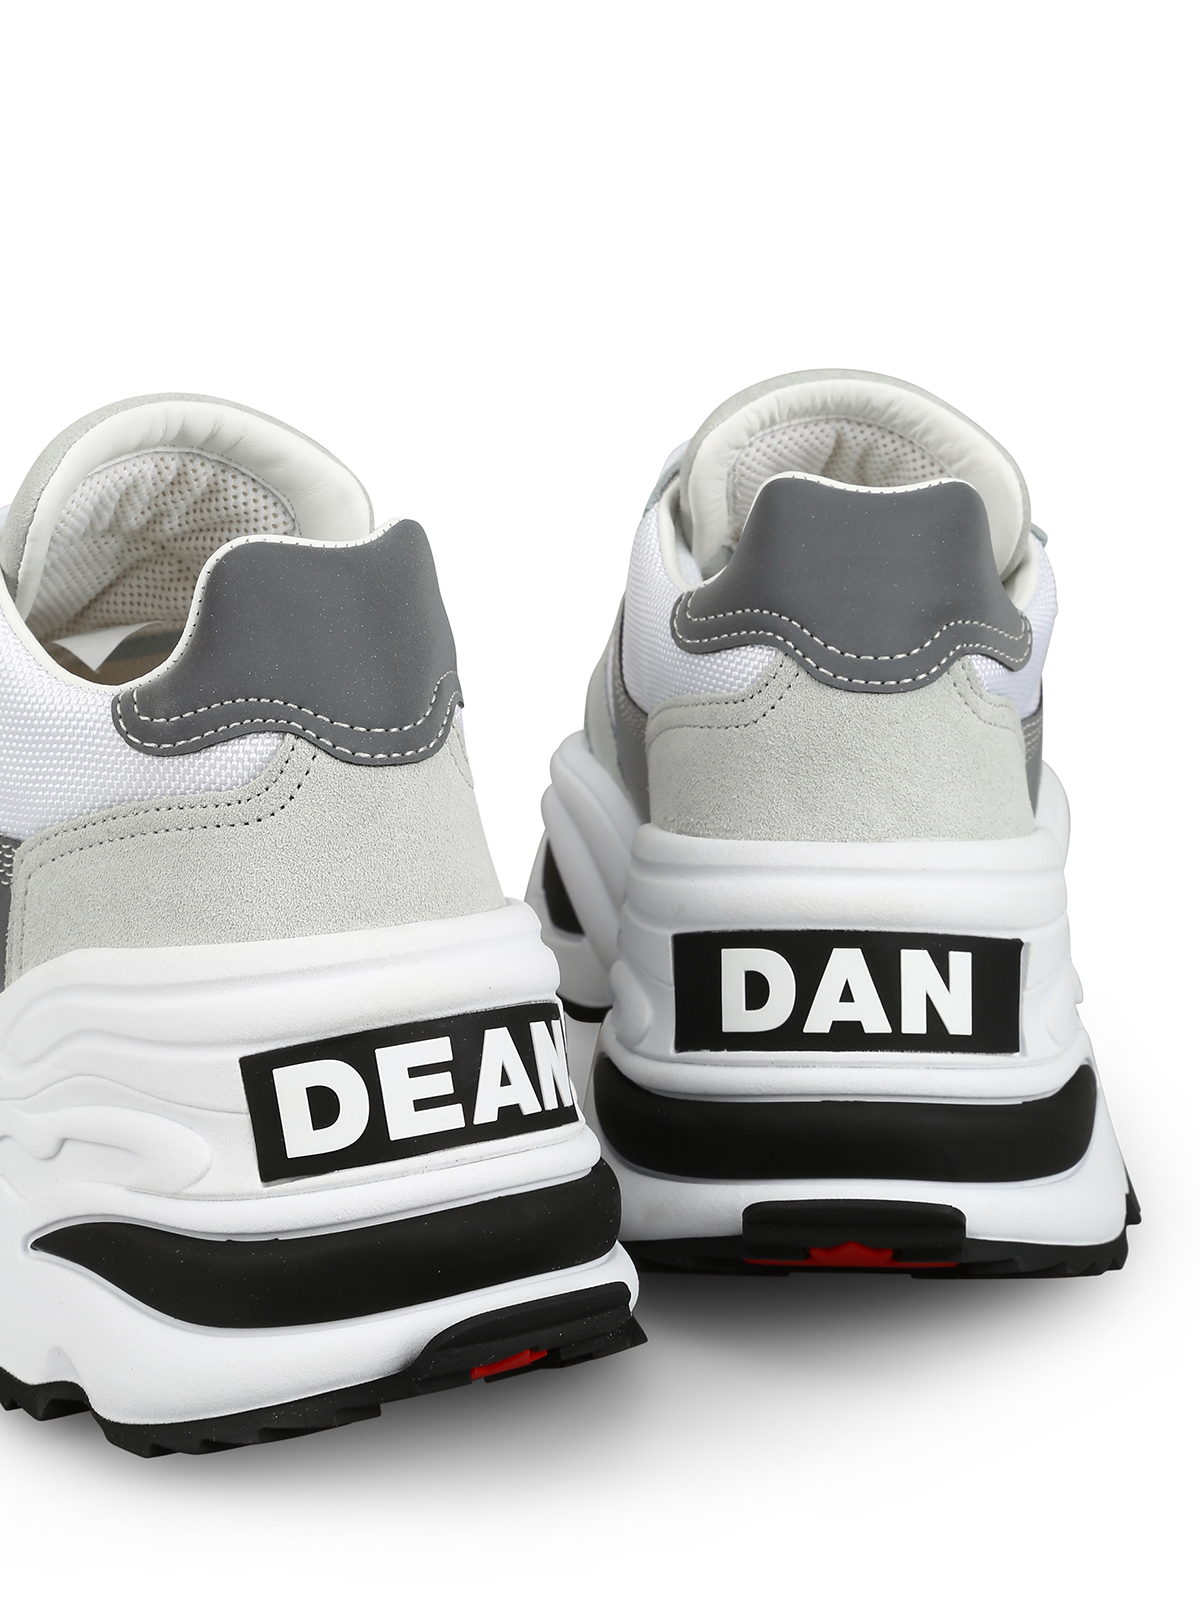 dsquared dean and dan sneakers - 61 